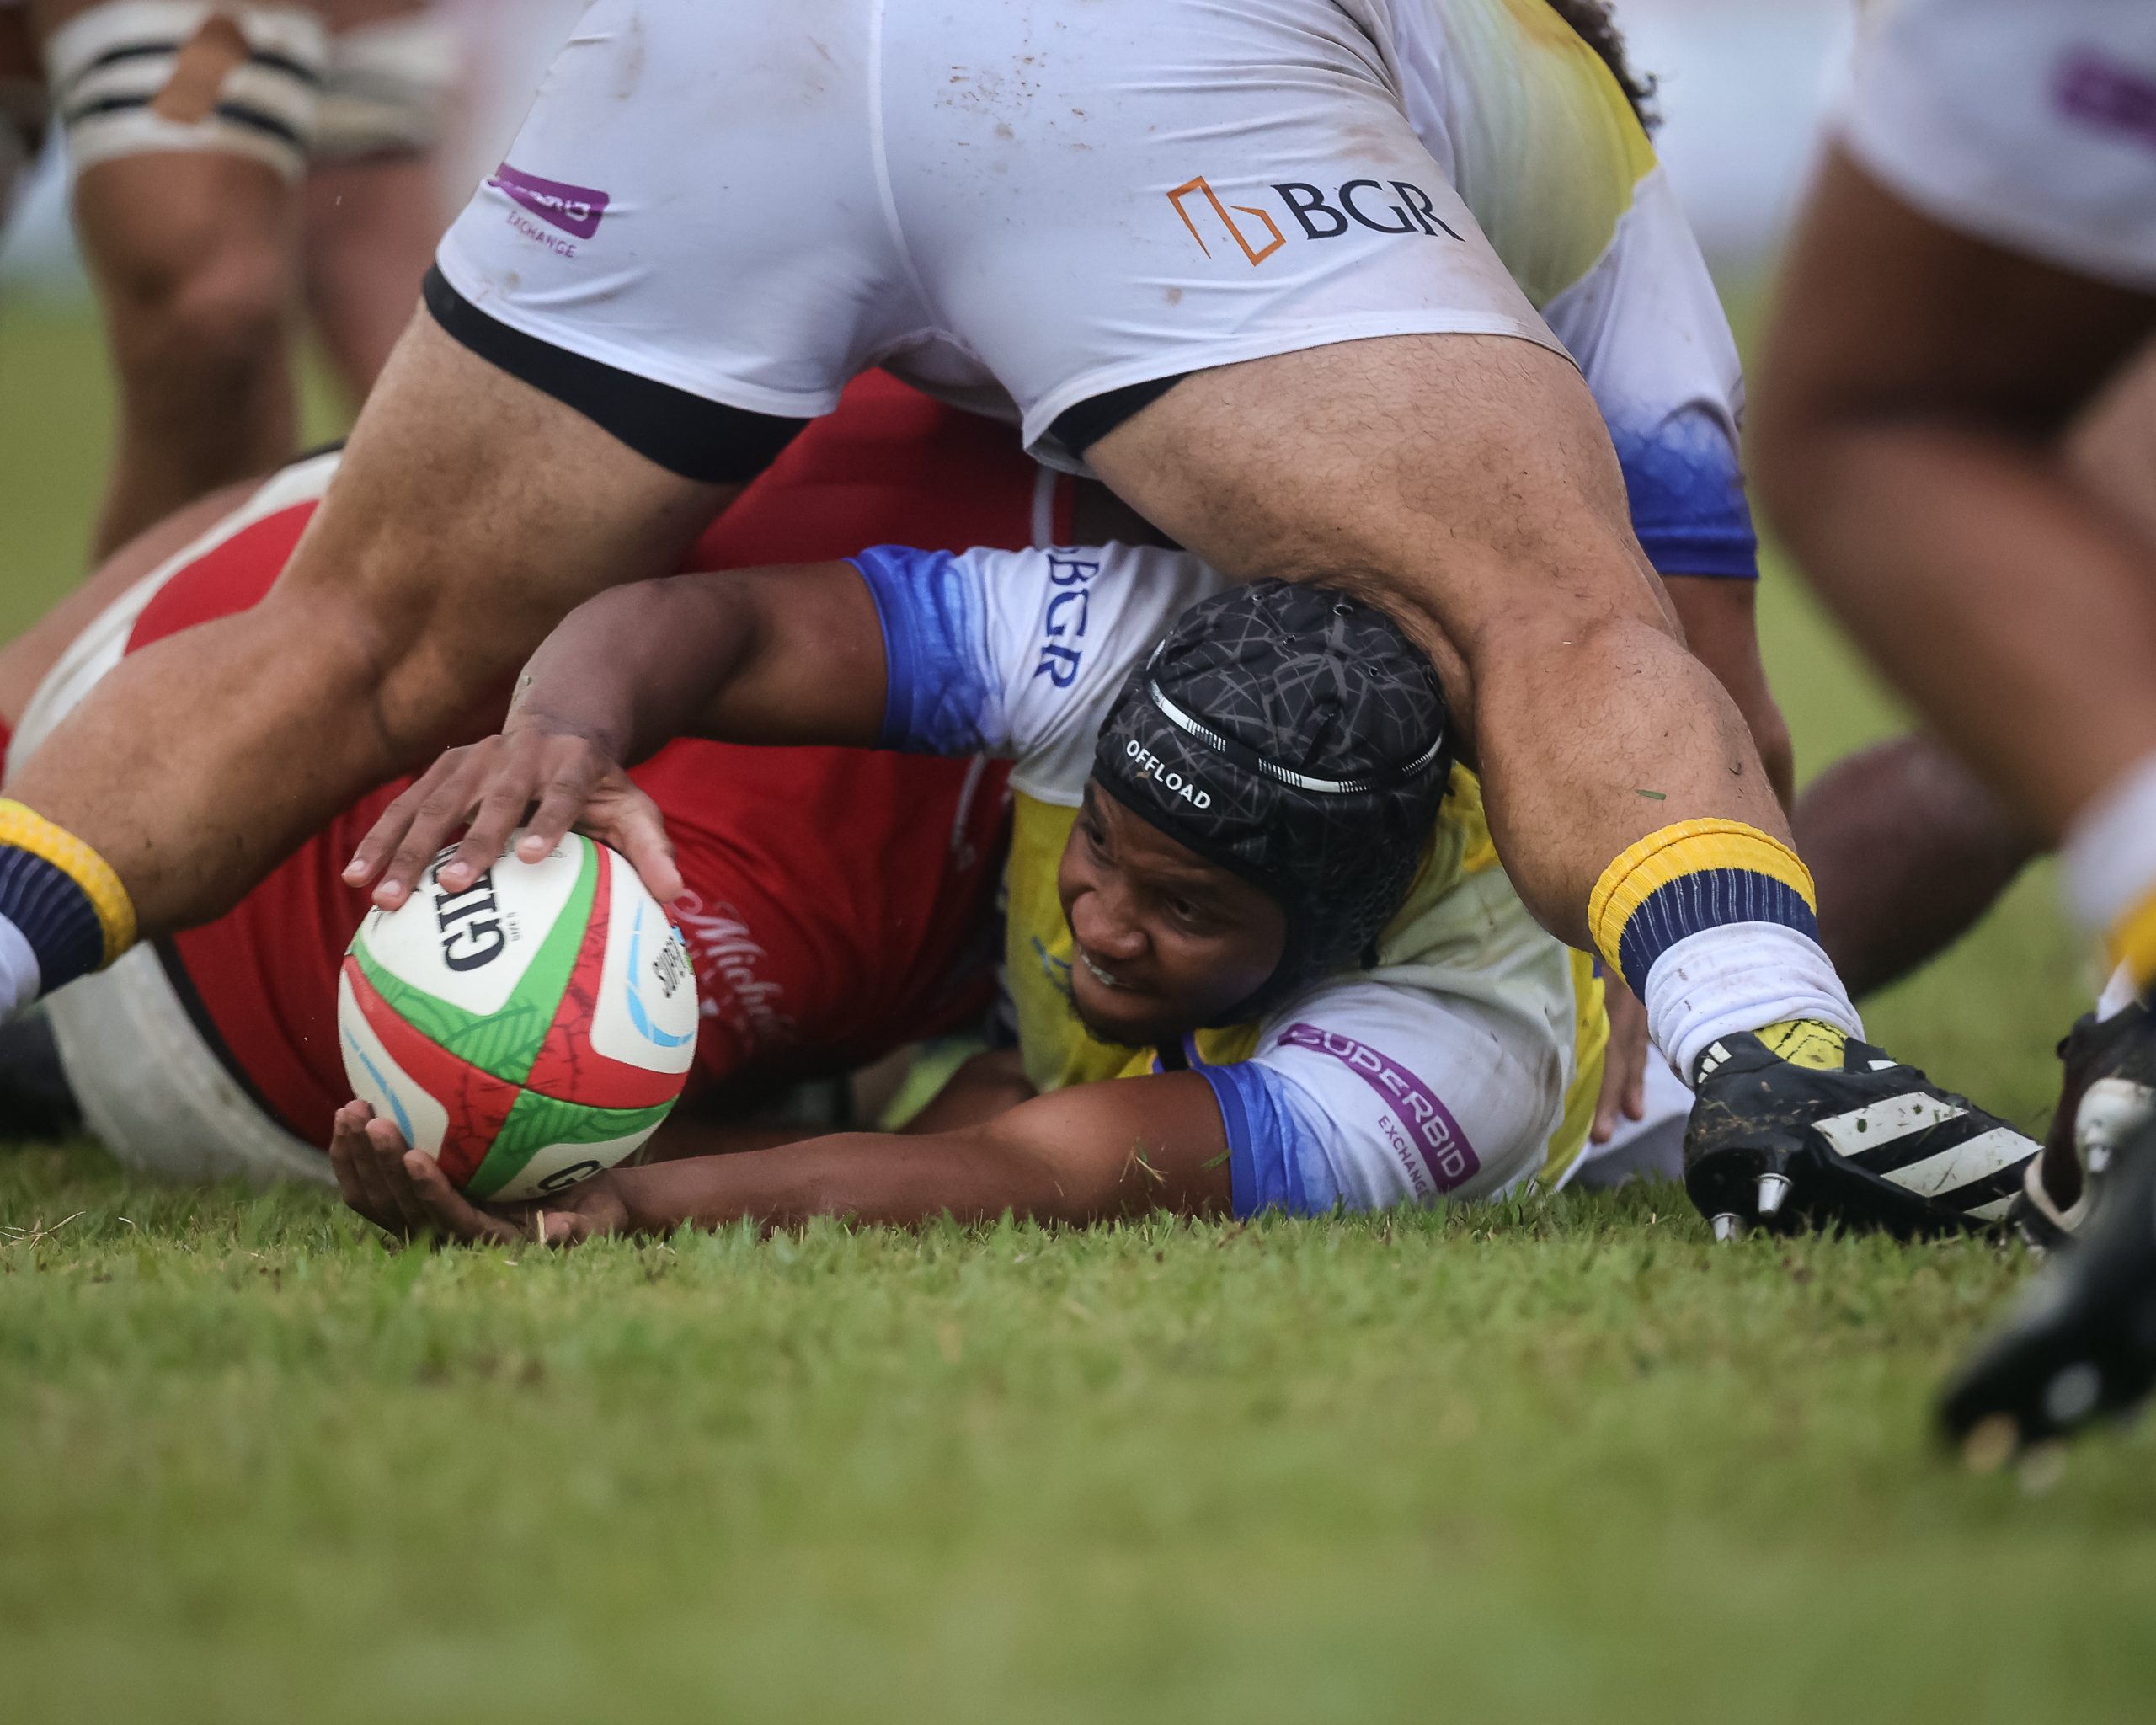 Cobras Brasil Rugby escalado para encarar jogo na Argentina neste domingo, dia 21